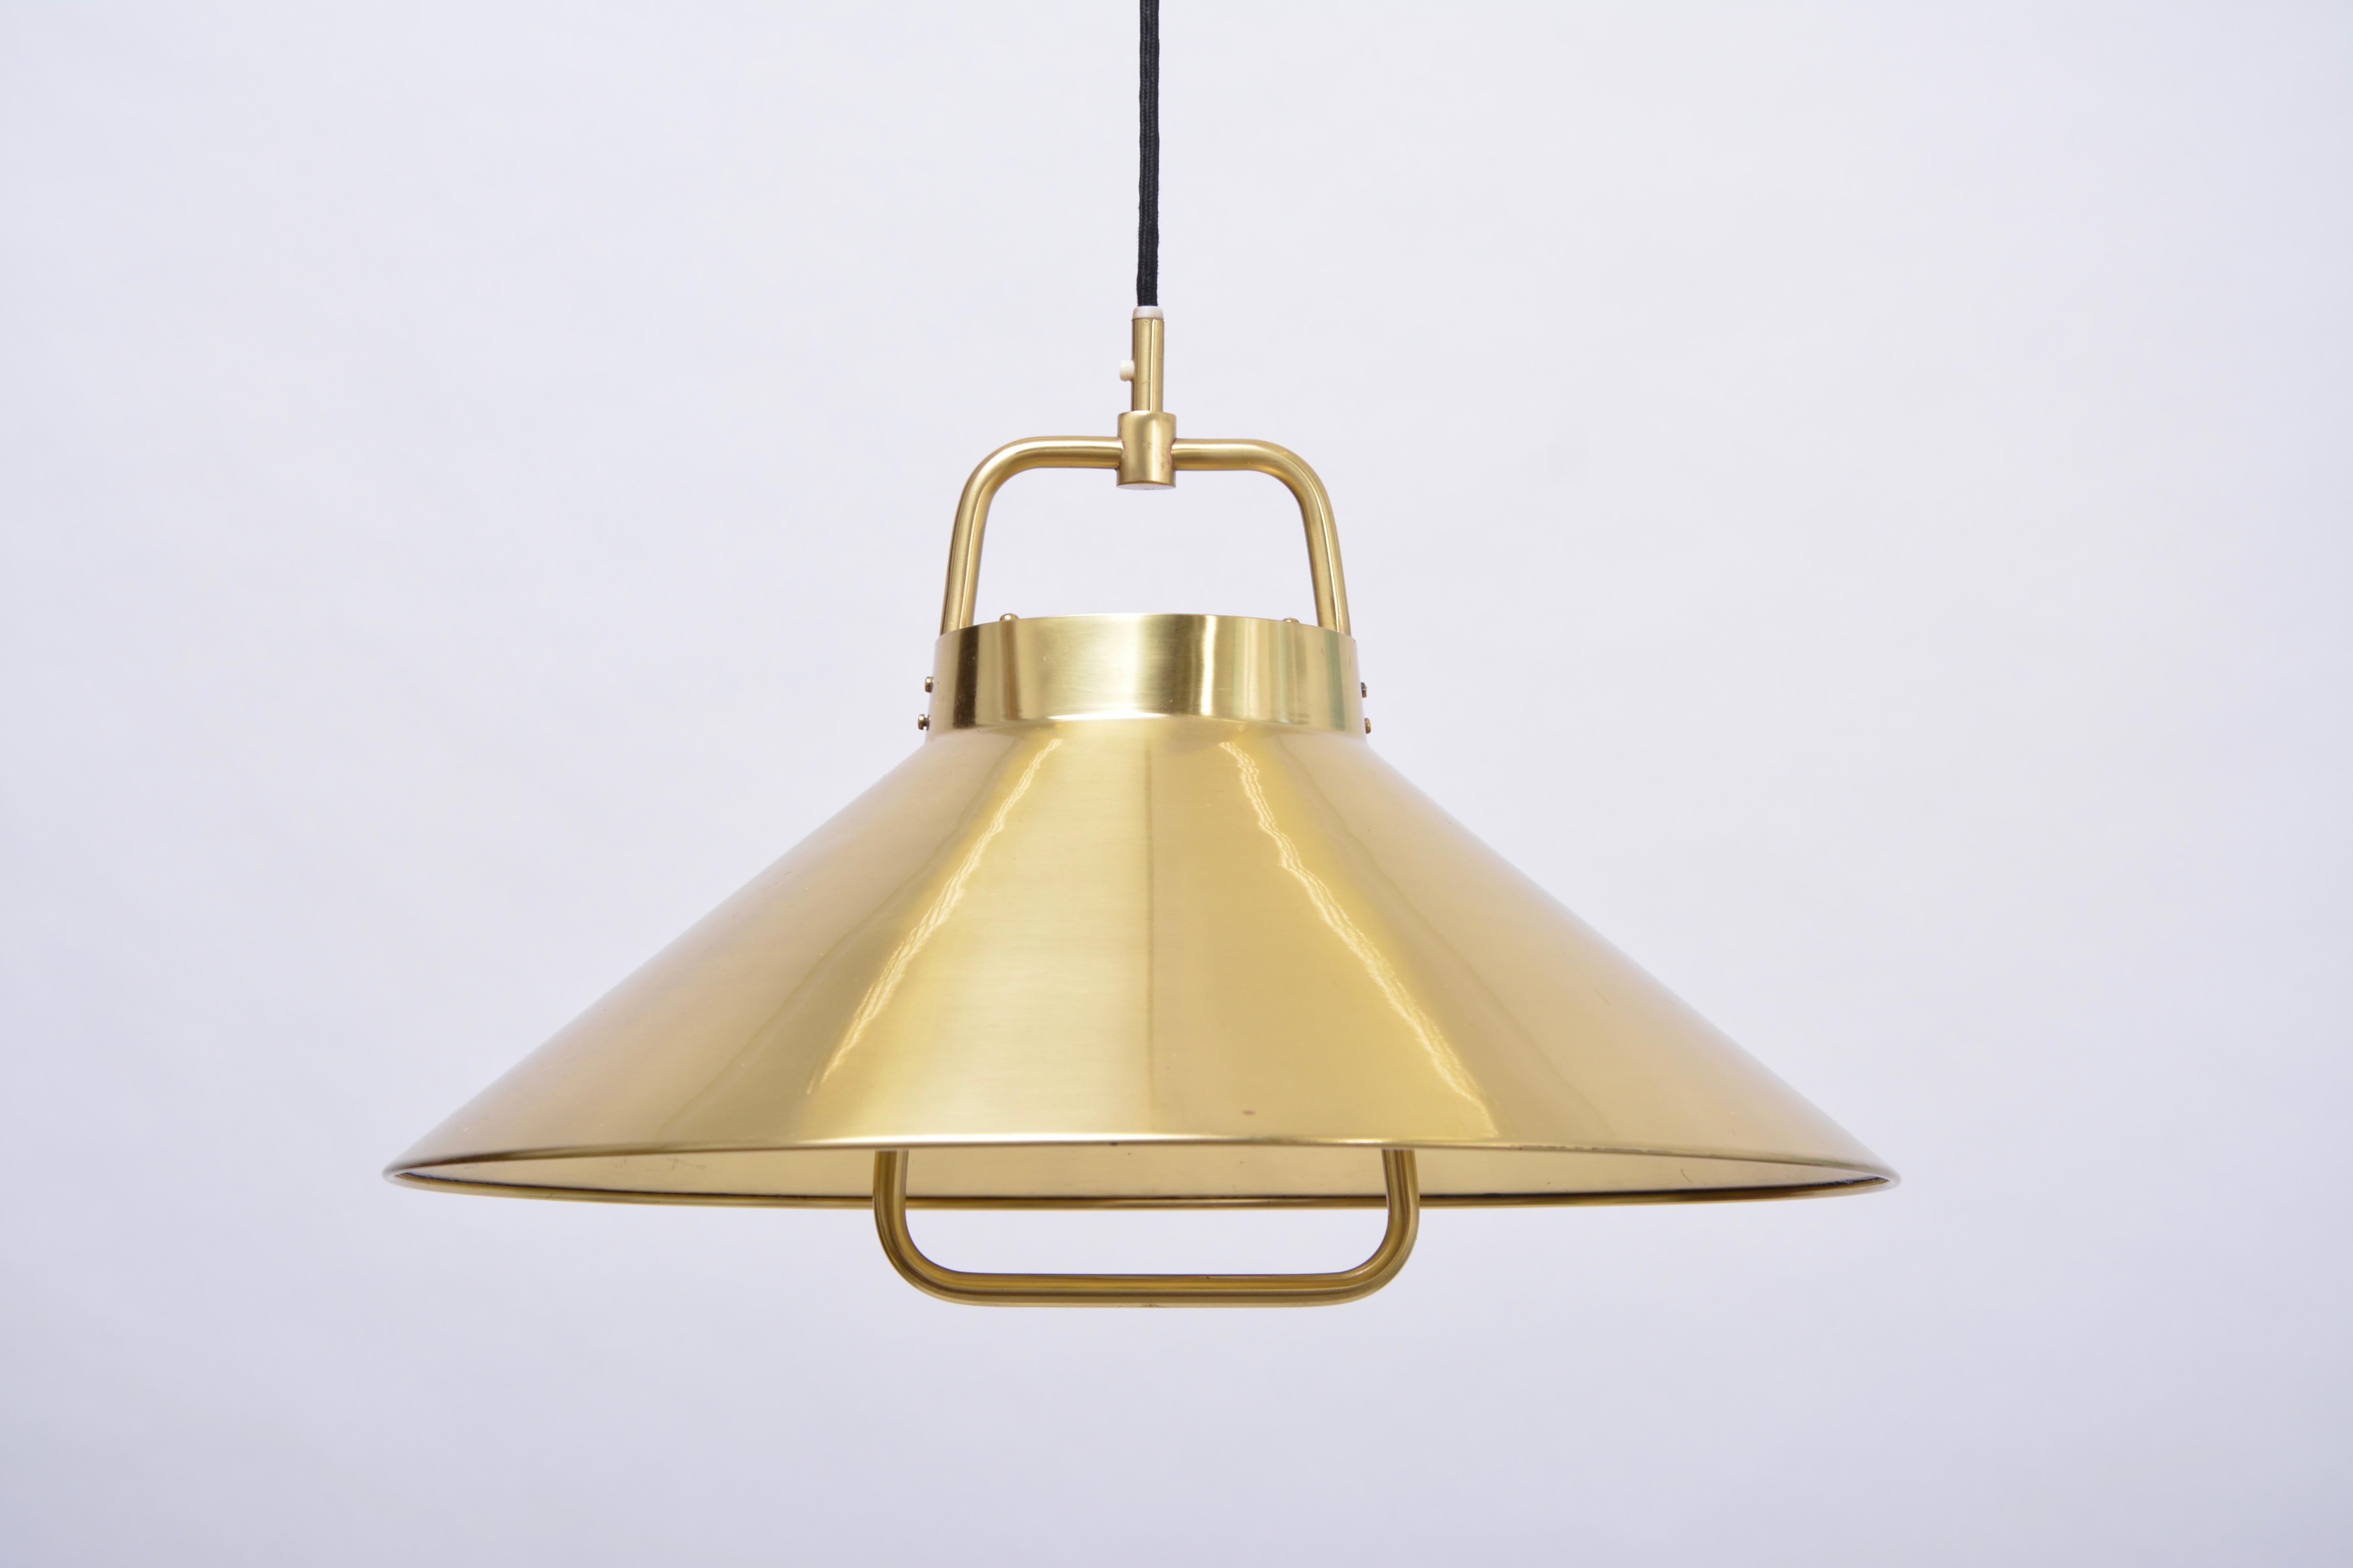 Danish Mid-Century Modern Brass pendant light by Fritz Schlegel for Lyfa (20. Jahrhundert)